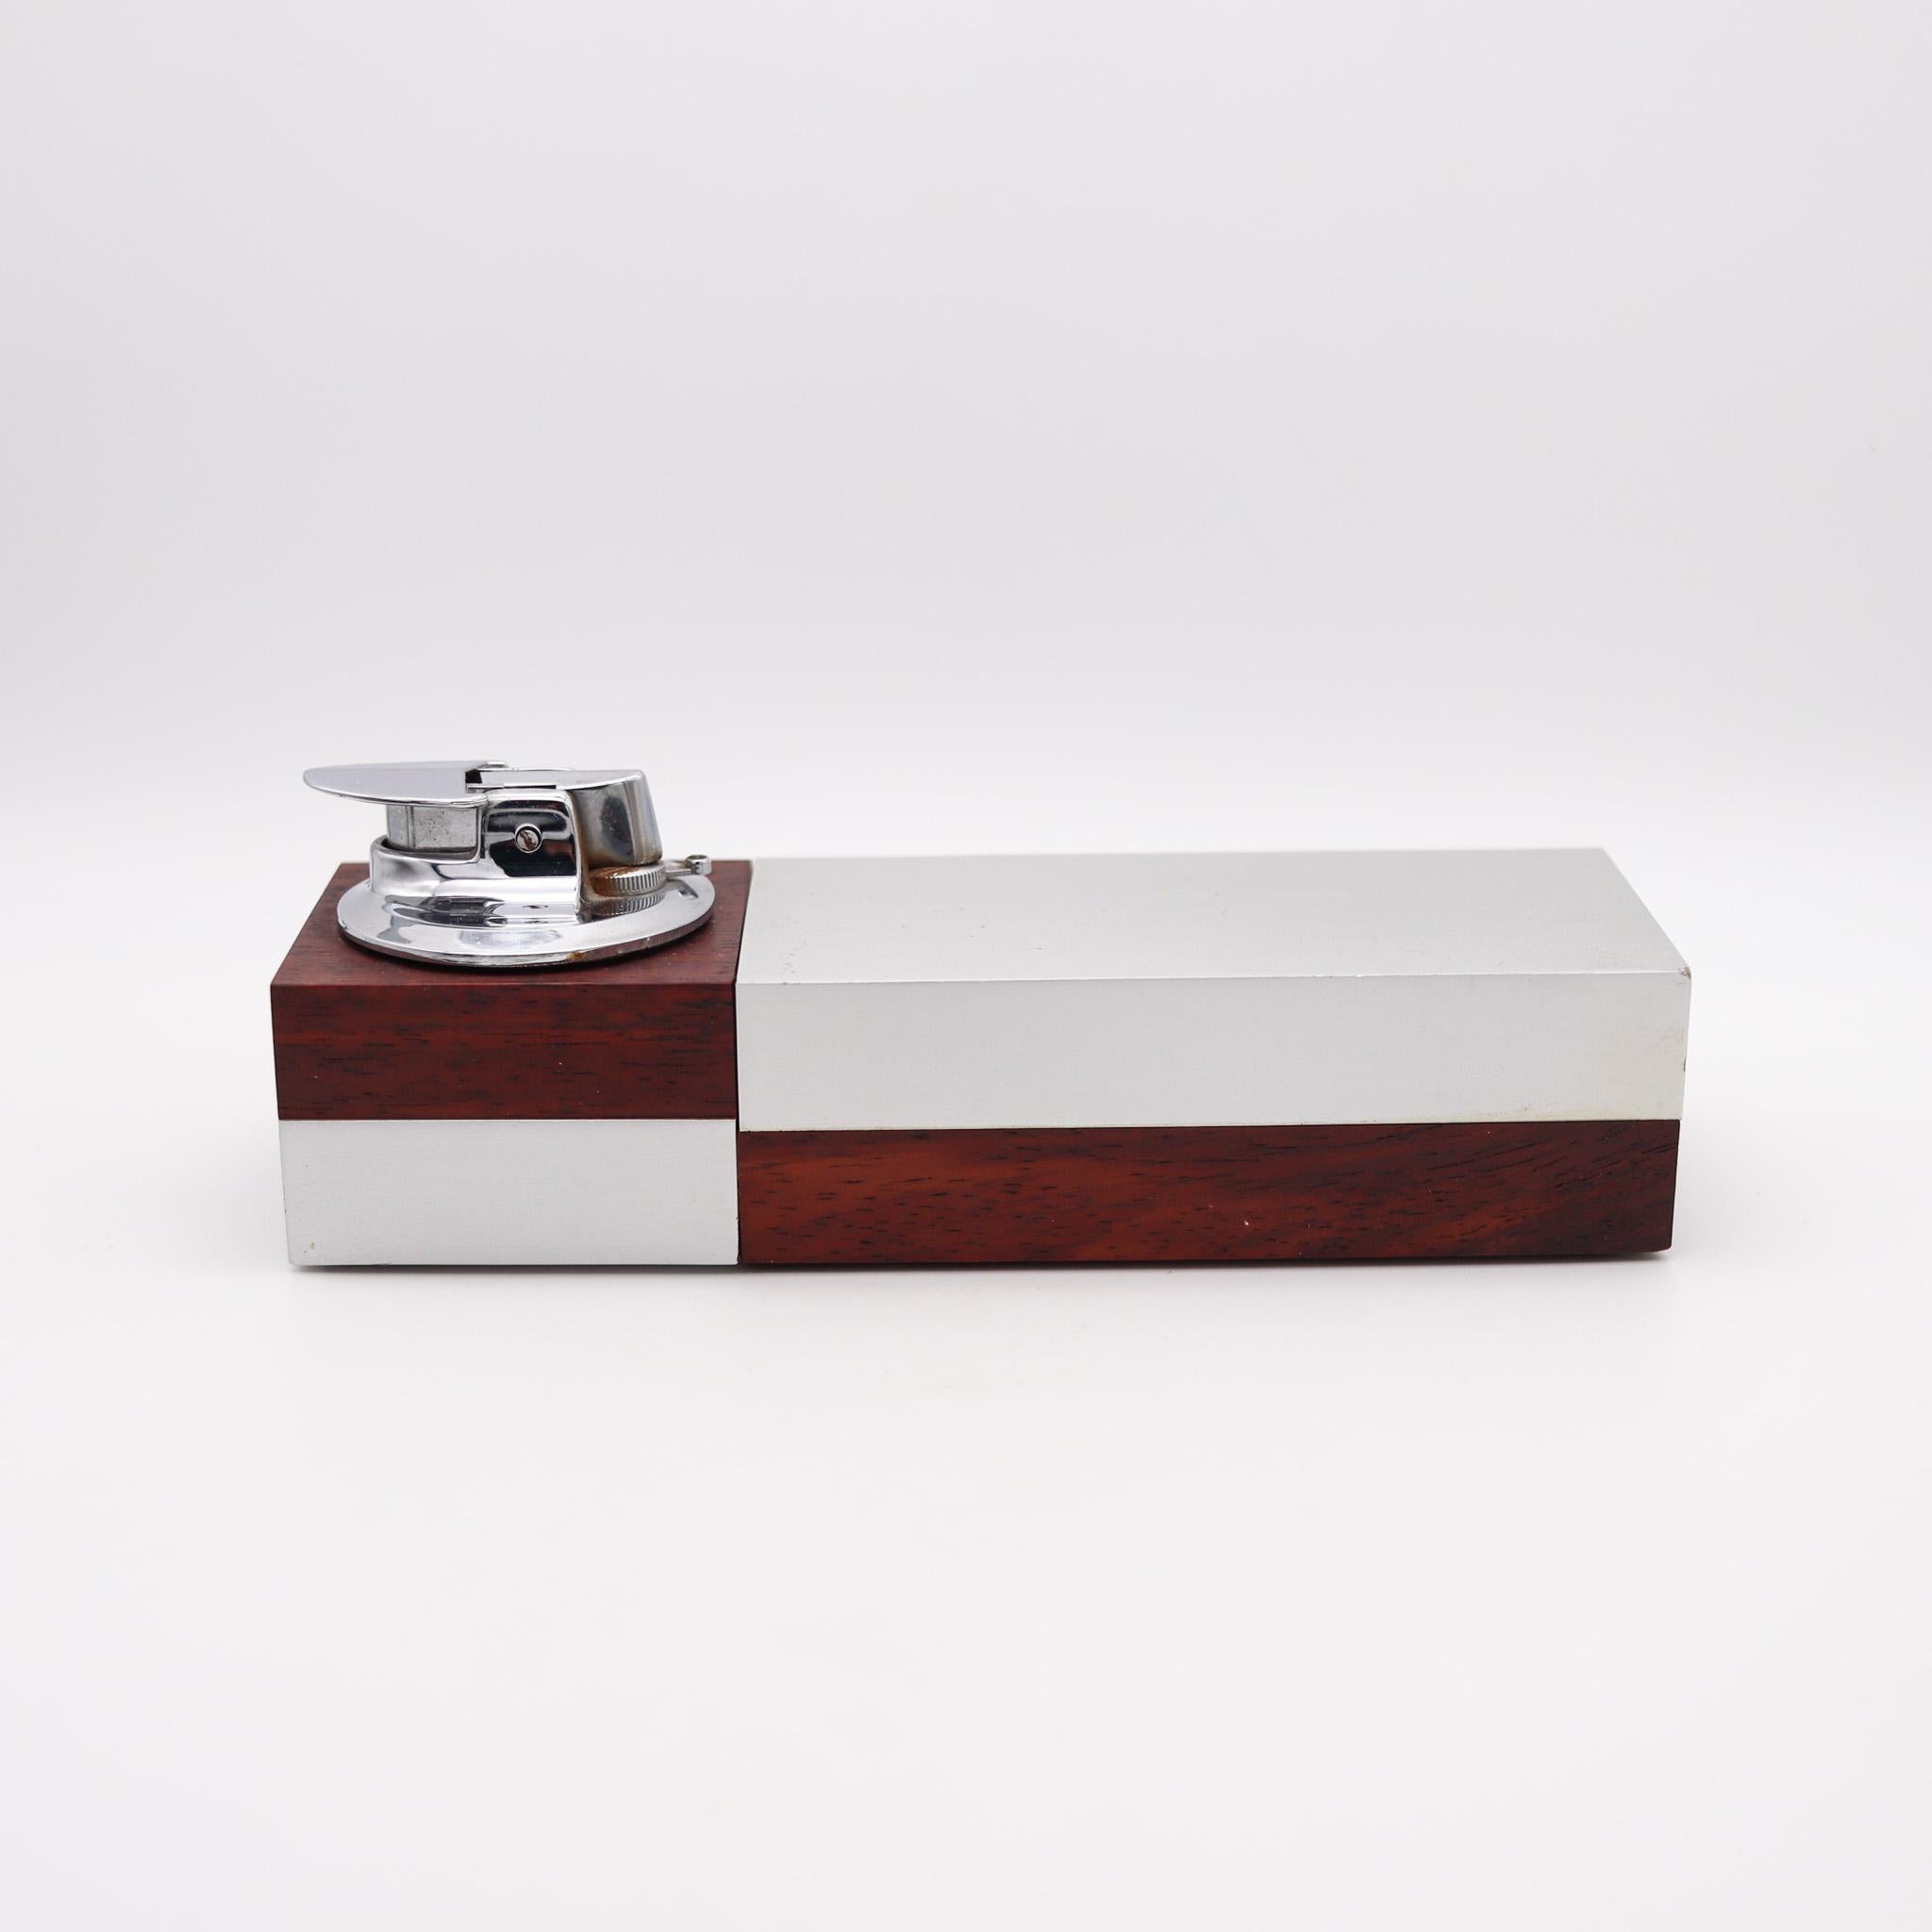 Boîte à cigarettes géométrique moderniste conçue par Ronson.

Une exceptionnelle et très belle boîte de bureau, créée en Allemagne de l'Ouest par The Ronson Co. pour Scandia. Cette pièce a été fabriquée au milieu du siècle dernier, dans les années